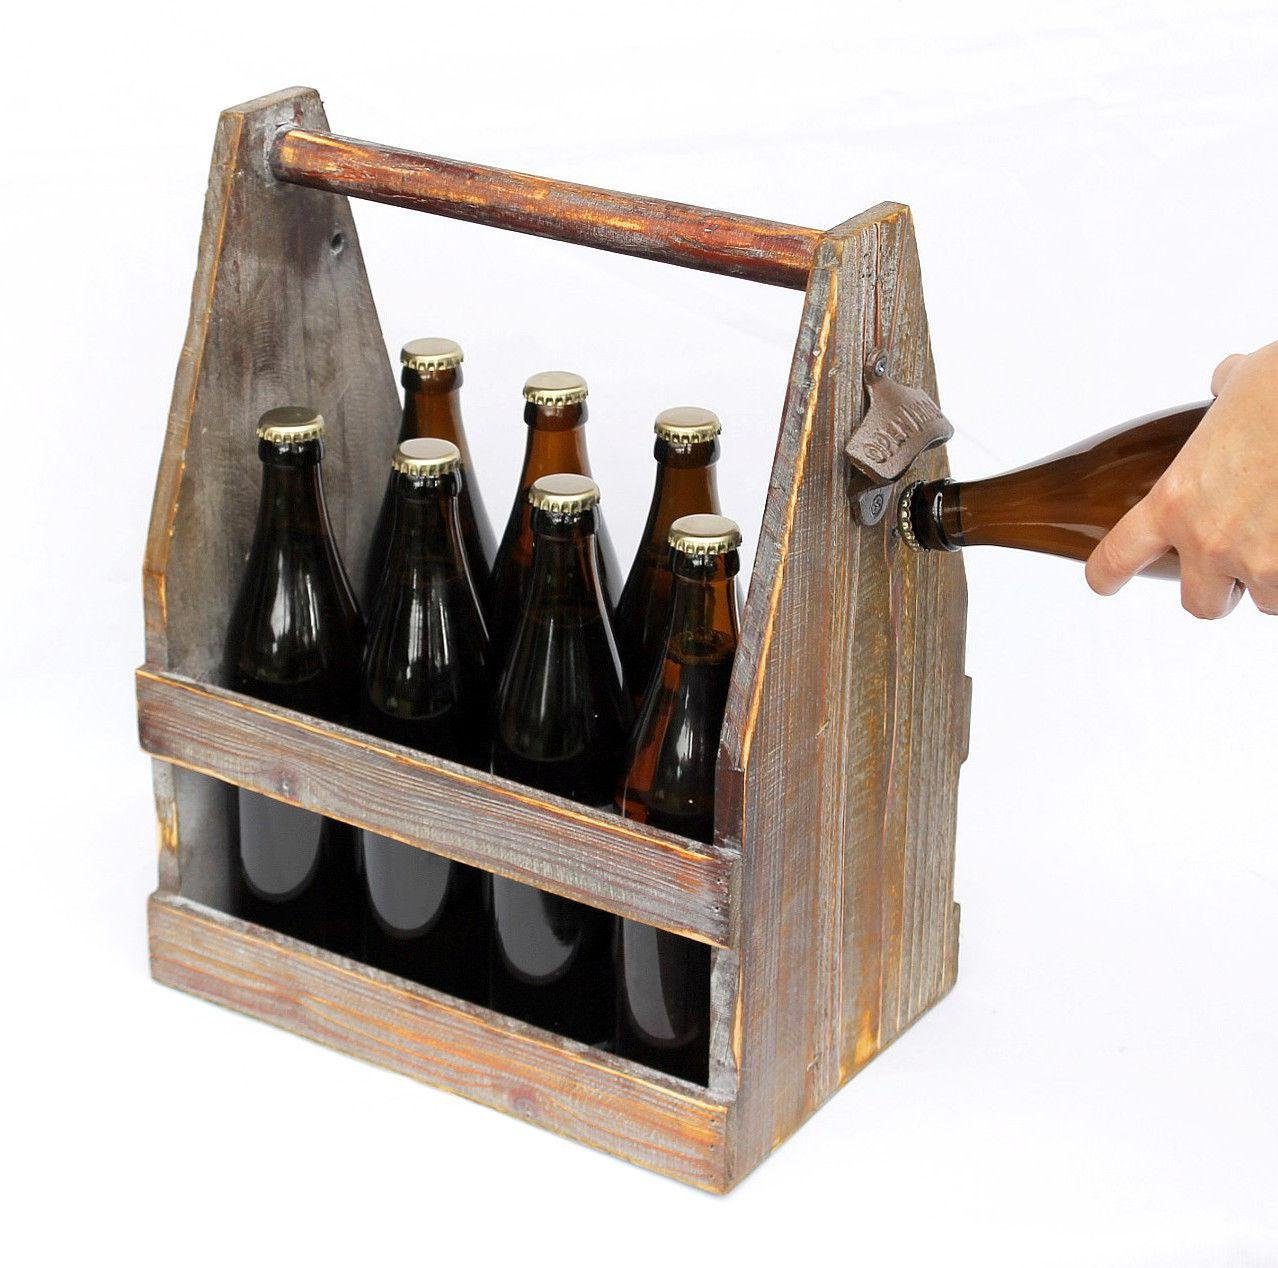 5087 Flaschenträger aus Flaschenöffner Bierkiste 38 cm Flaschenkorb mit Holz DanDiBo Bierträger